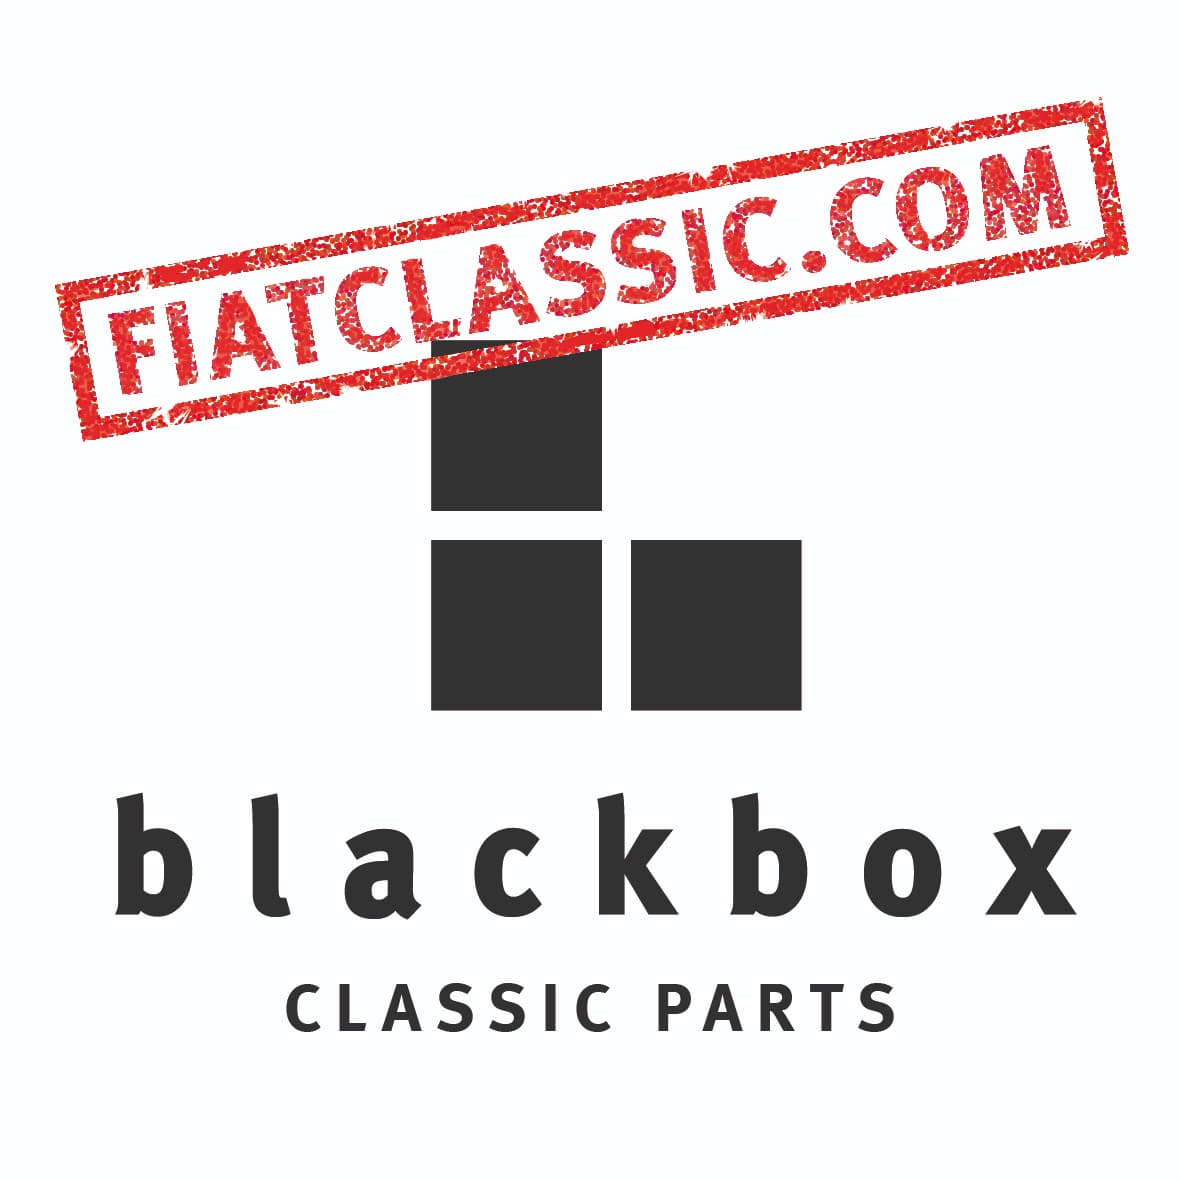 www.fiatclassic.com